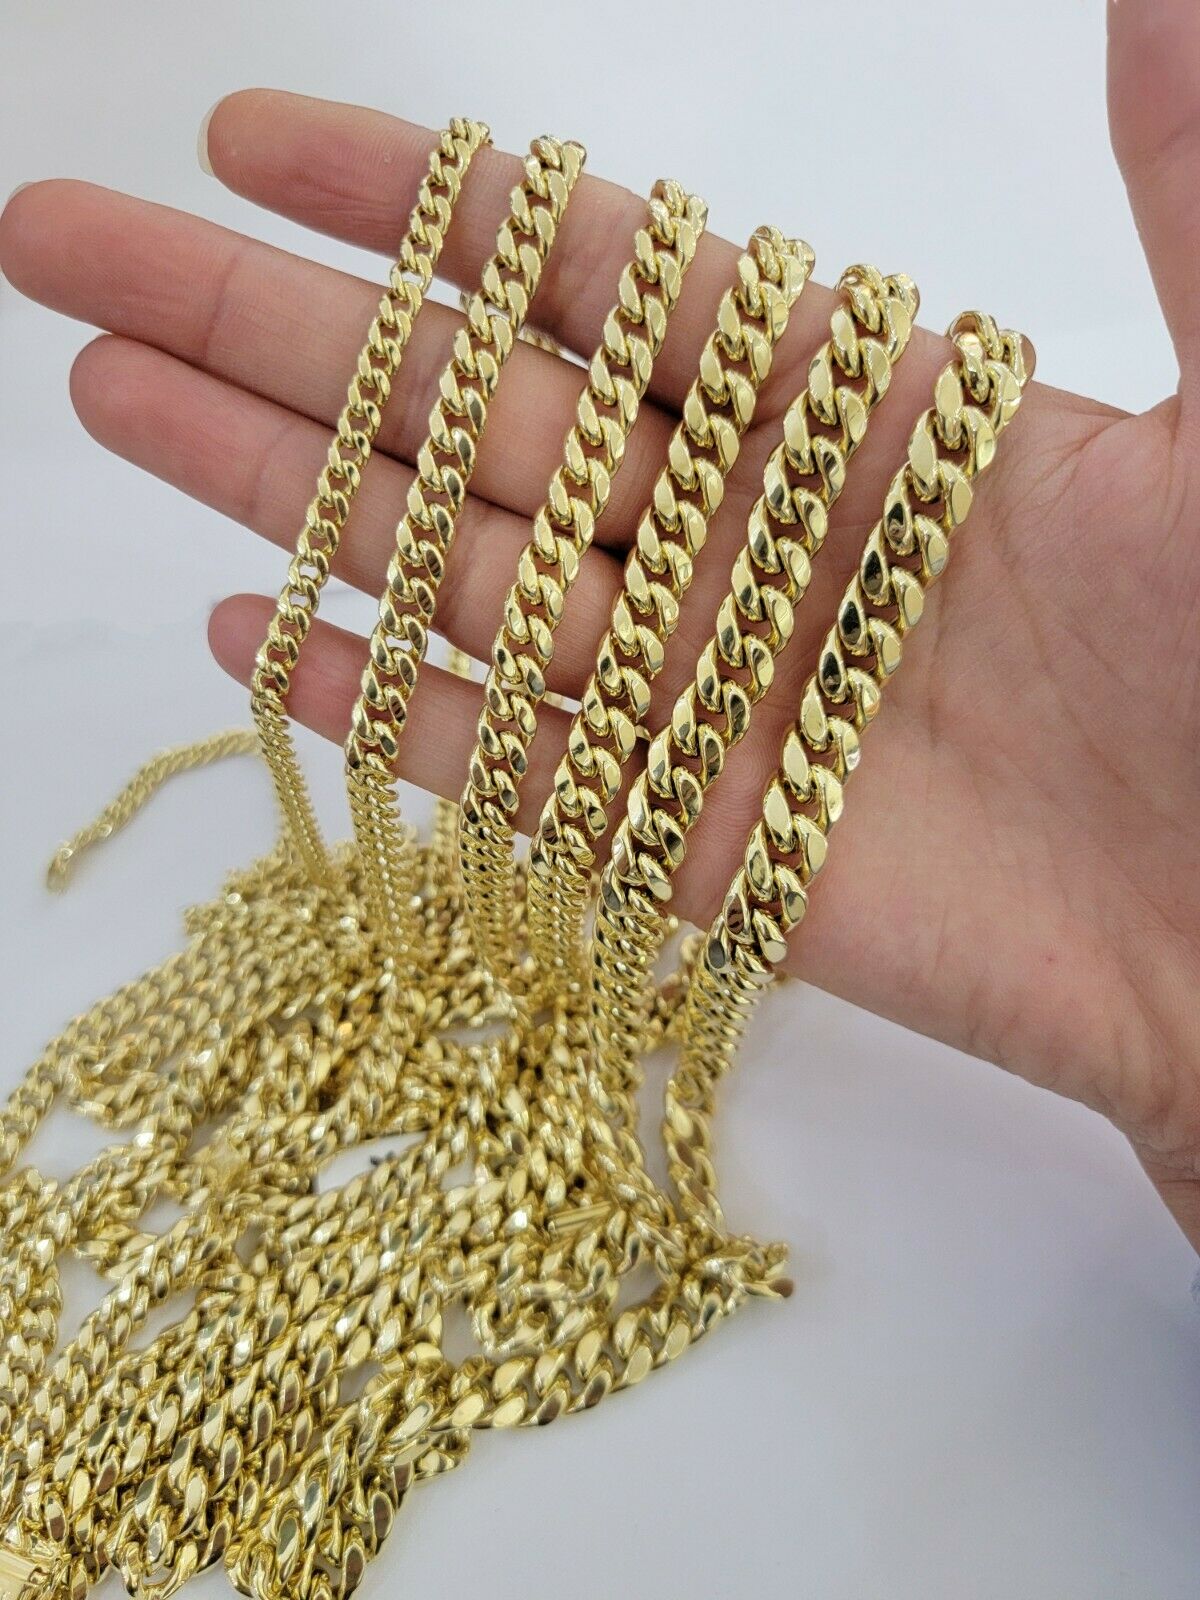 14K Gold 6mm Curb Chain Bracelet Gold Chain Bracelet Cuban 